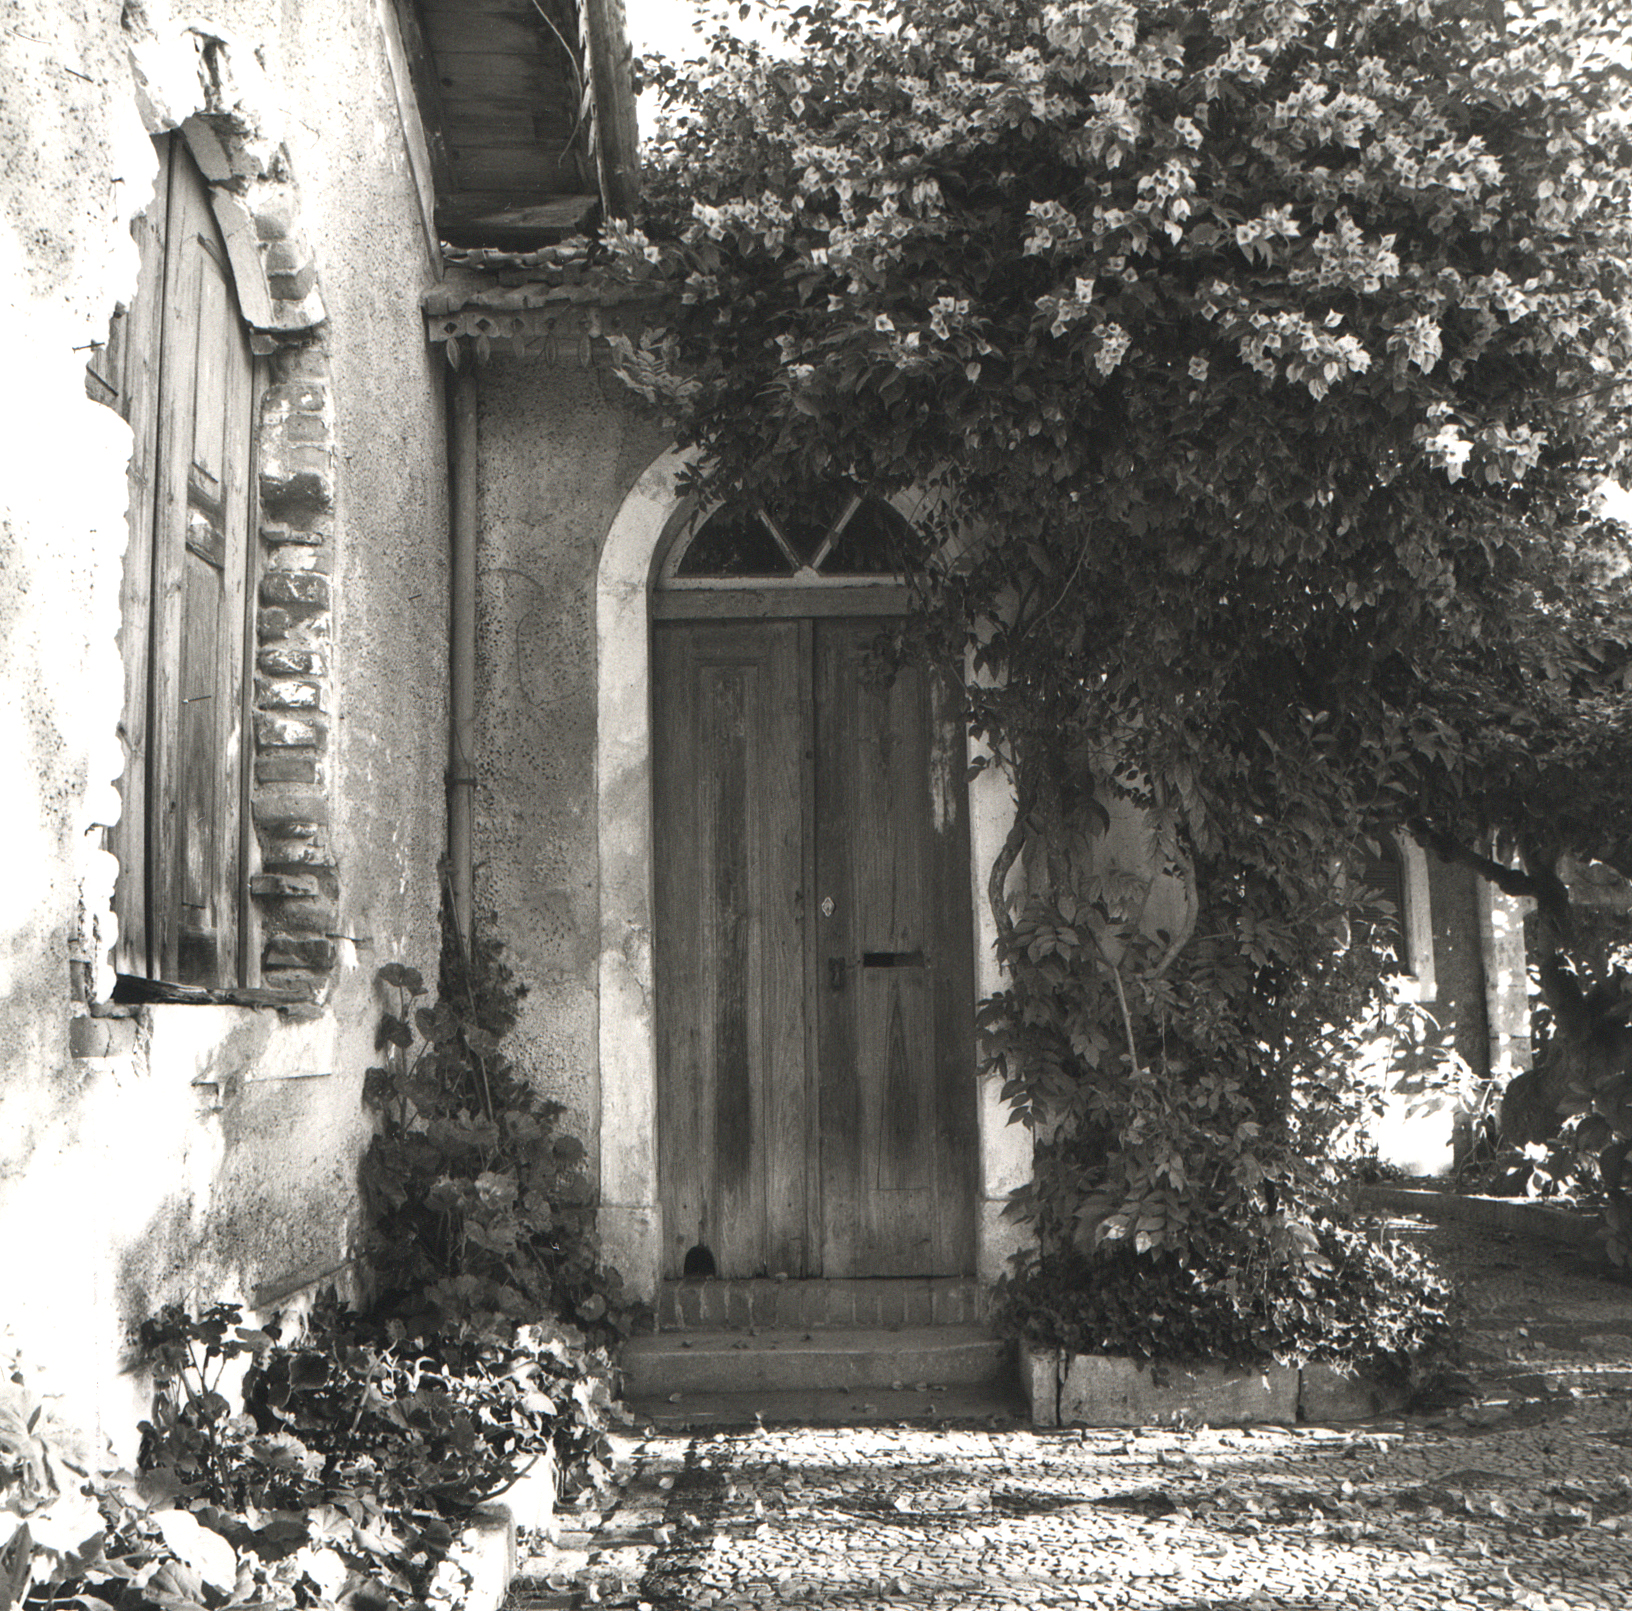 Abrantes Door, Portugal, ©Kelly Povo